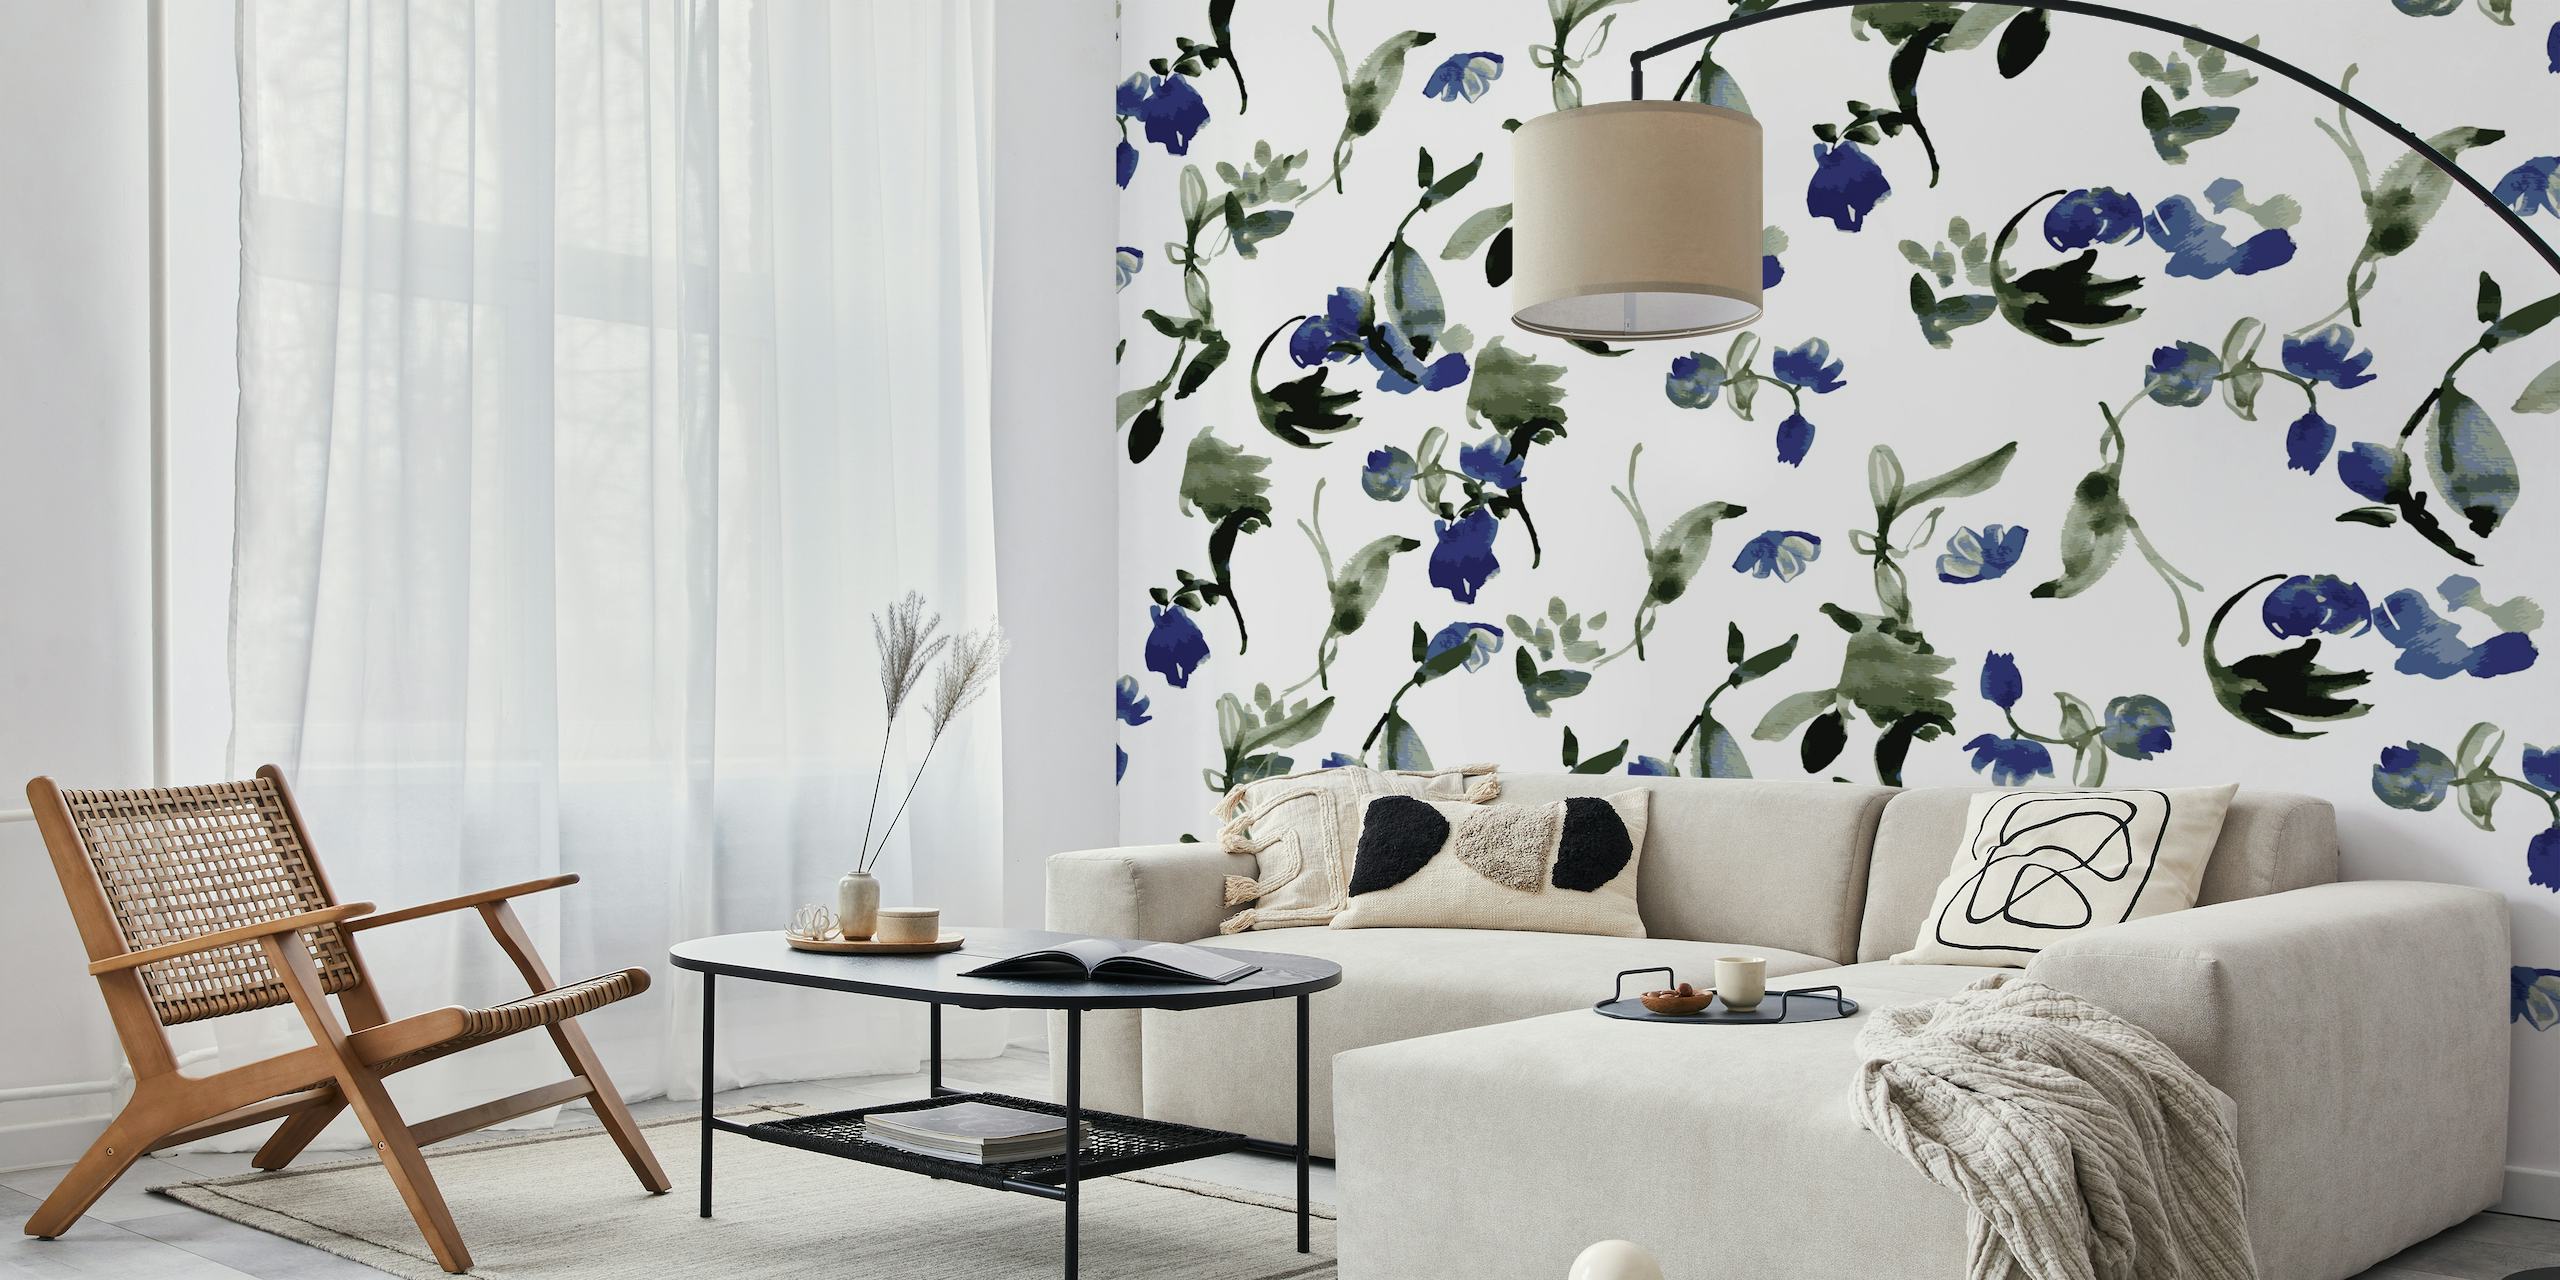 Blauwe bloemen aquarel lente muurschildering ontwerp.